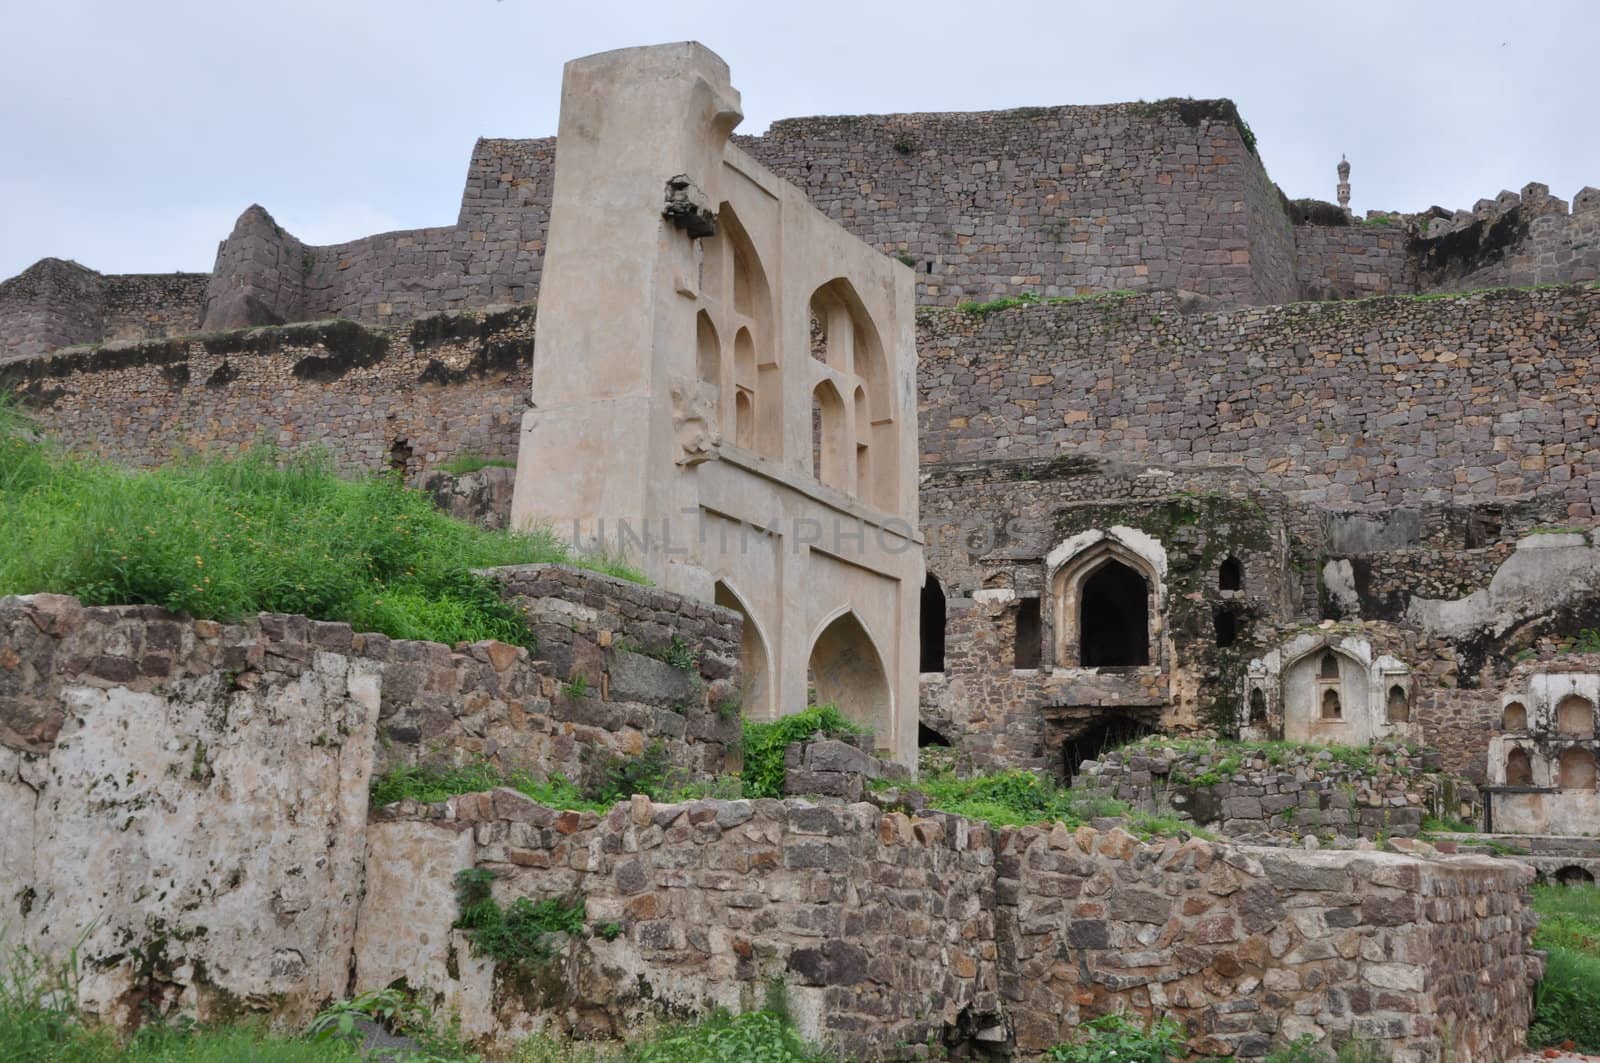 Golconda Fort in Hyderabad, India by sainaniritu